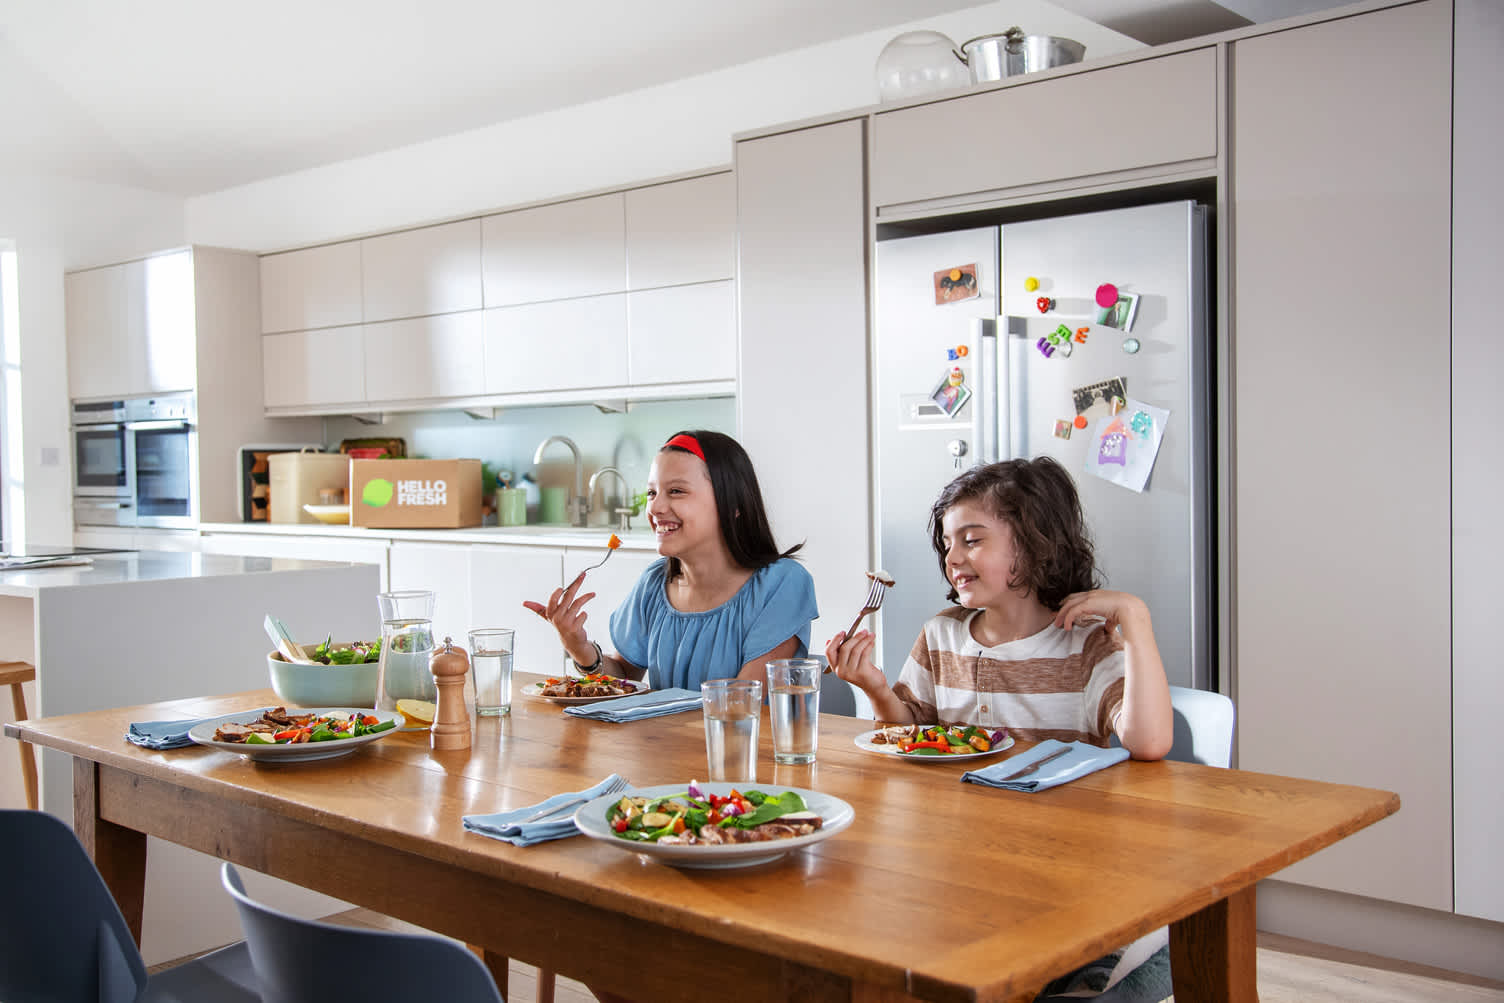 Selon 84% des Belges, partager un repas en famille est considéré comme essentiel pour améliorer la qualité des moments passés ensemble